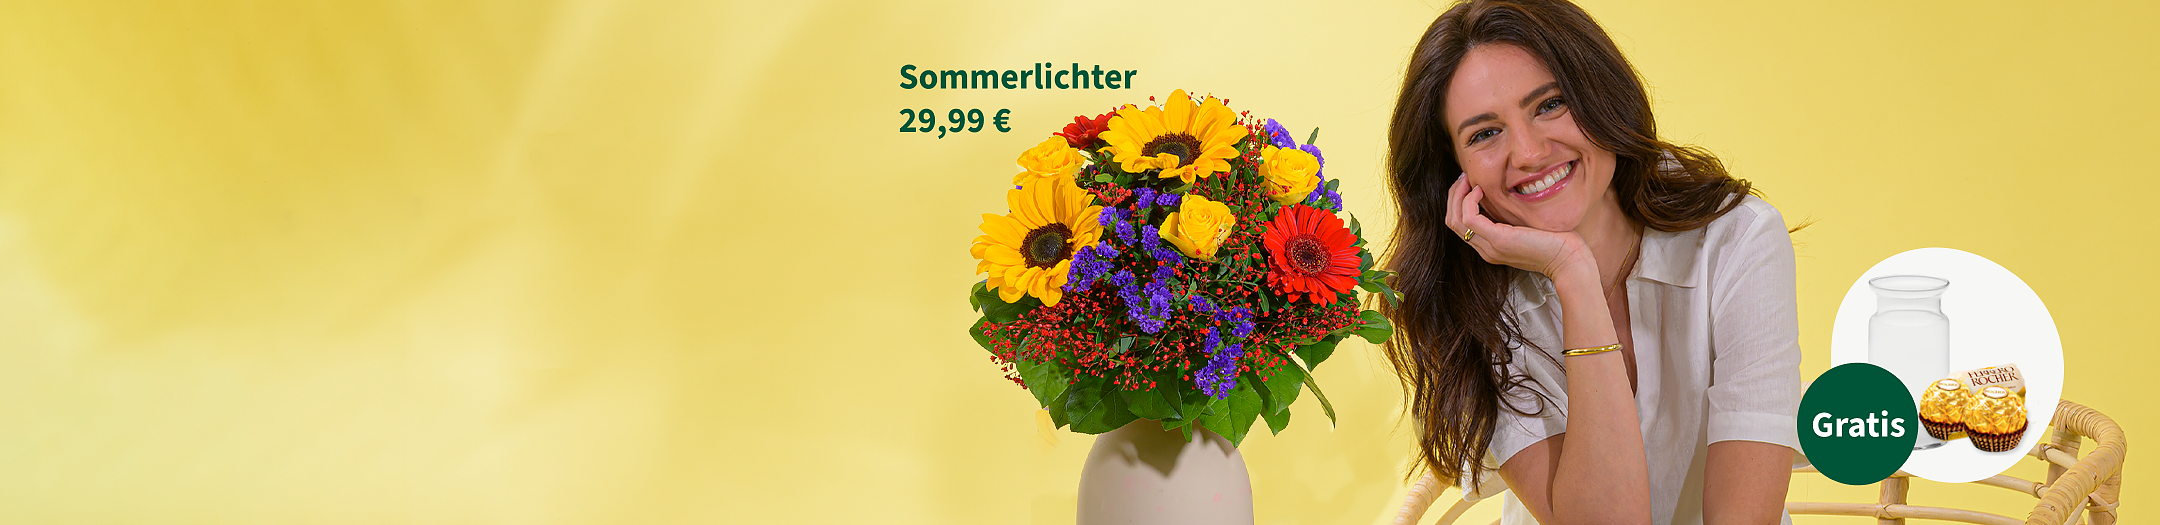 Blumenstrauß Sommerlichter für 29,99 €